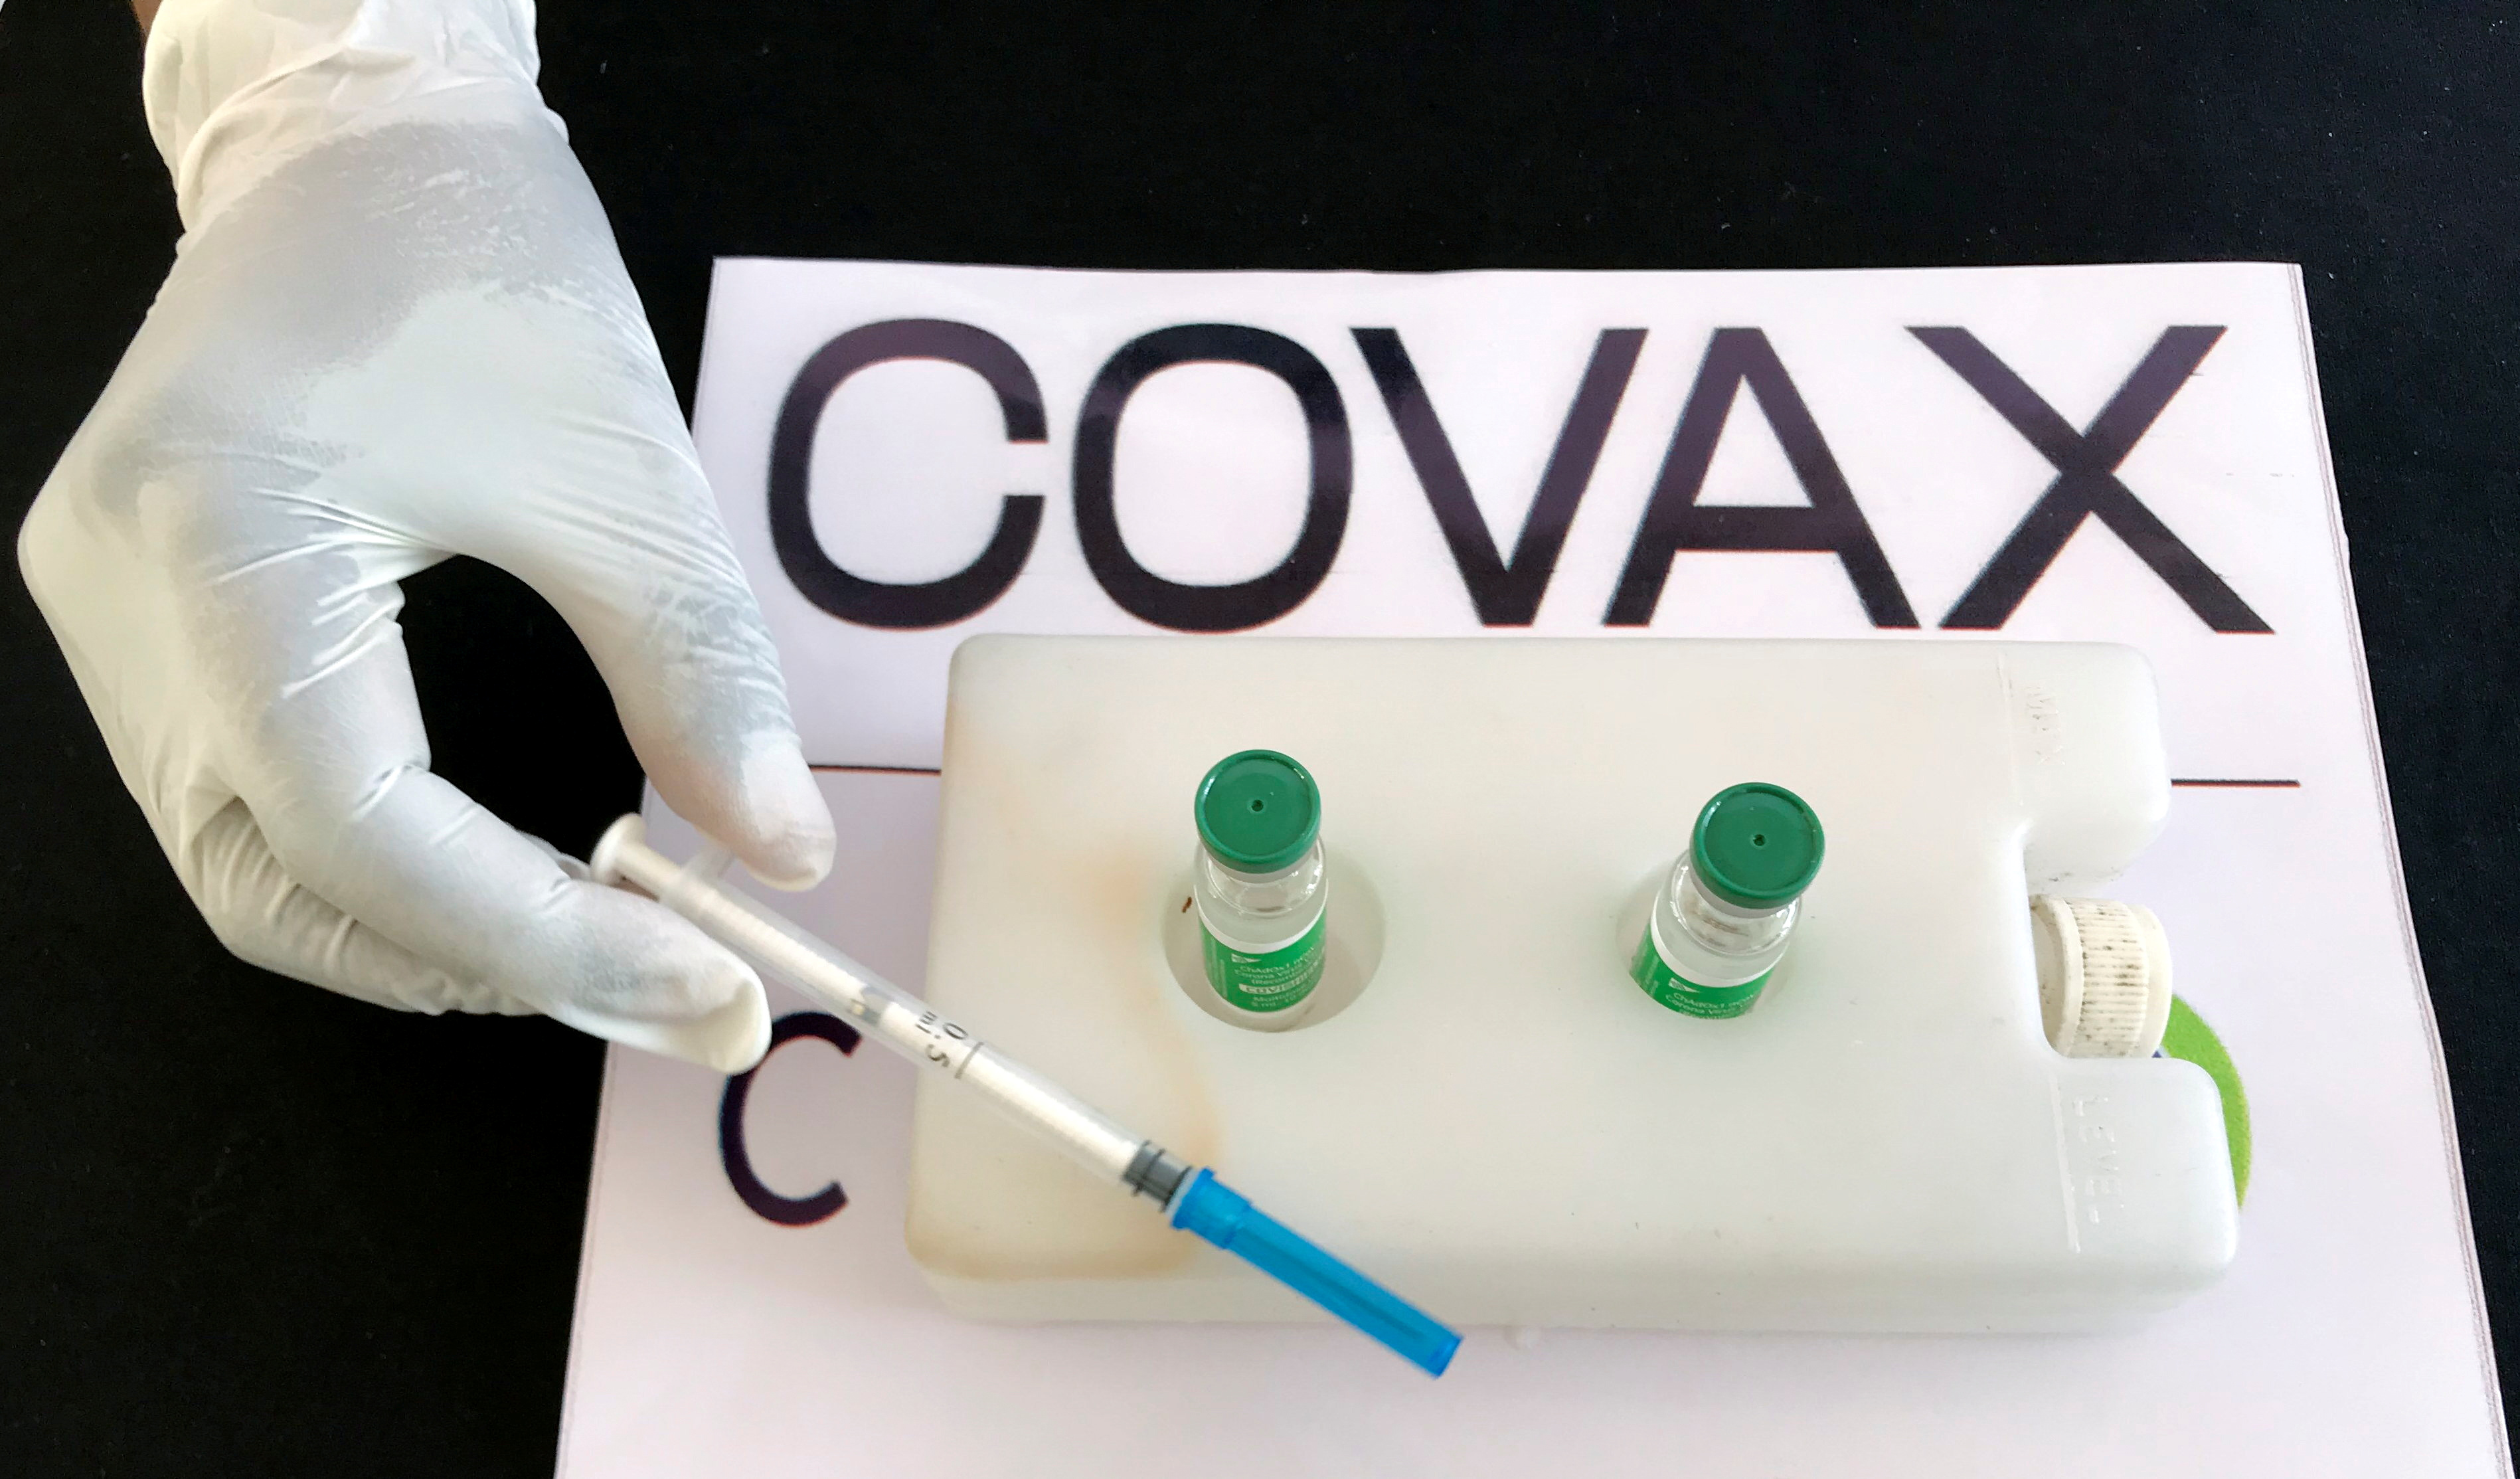 Le Covax exhorte l'aide internationale pour atteindre ses objectifs de vaccination